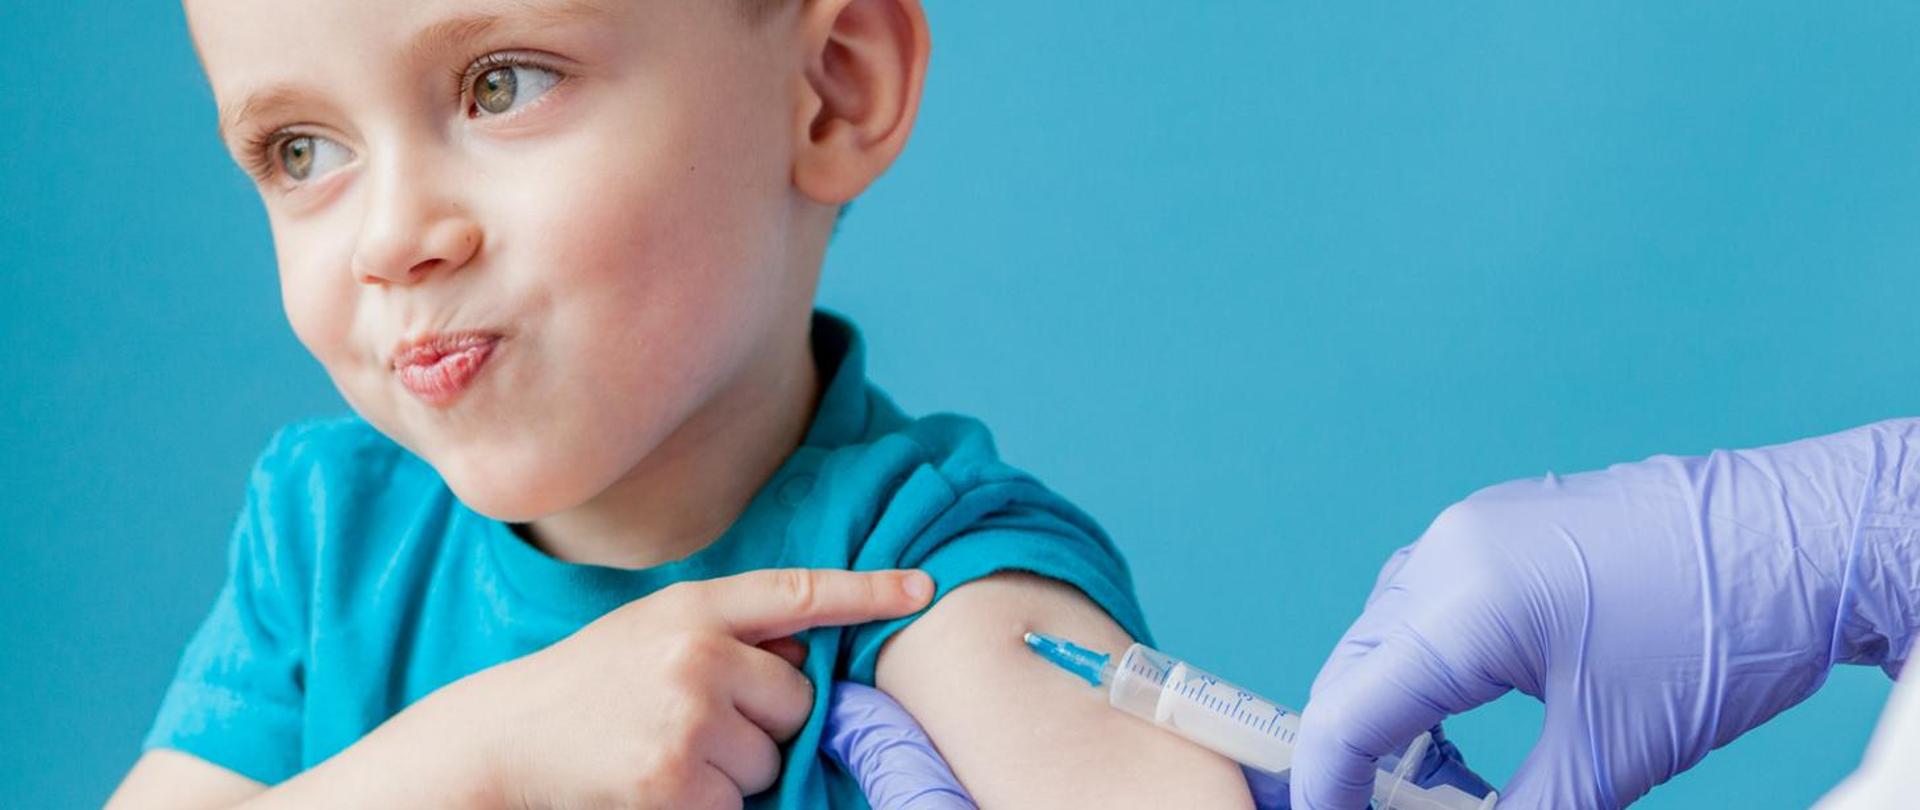 Zdjęcie przedstawia dziecko, które jest szczepione szczepionką.